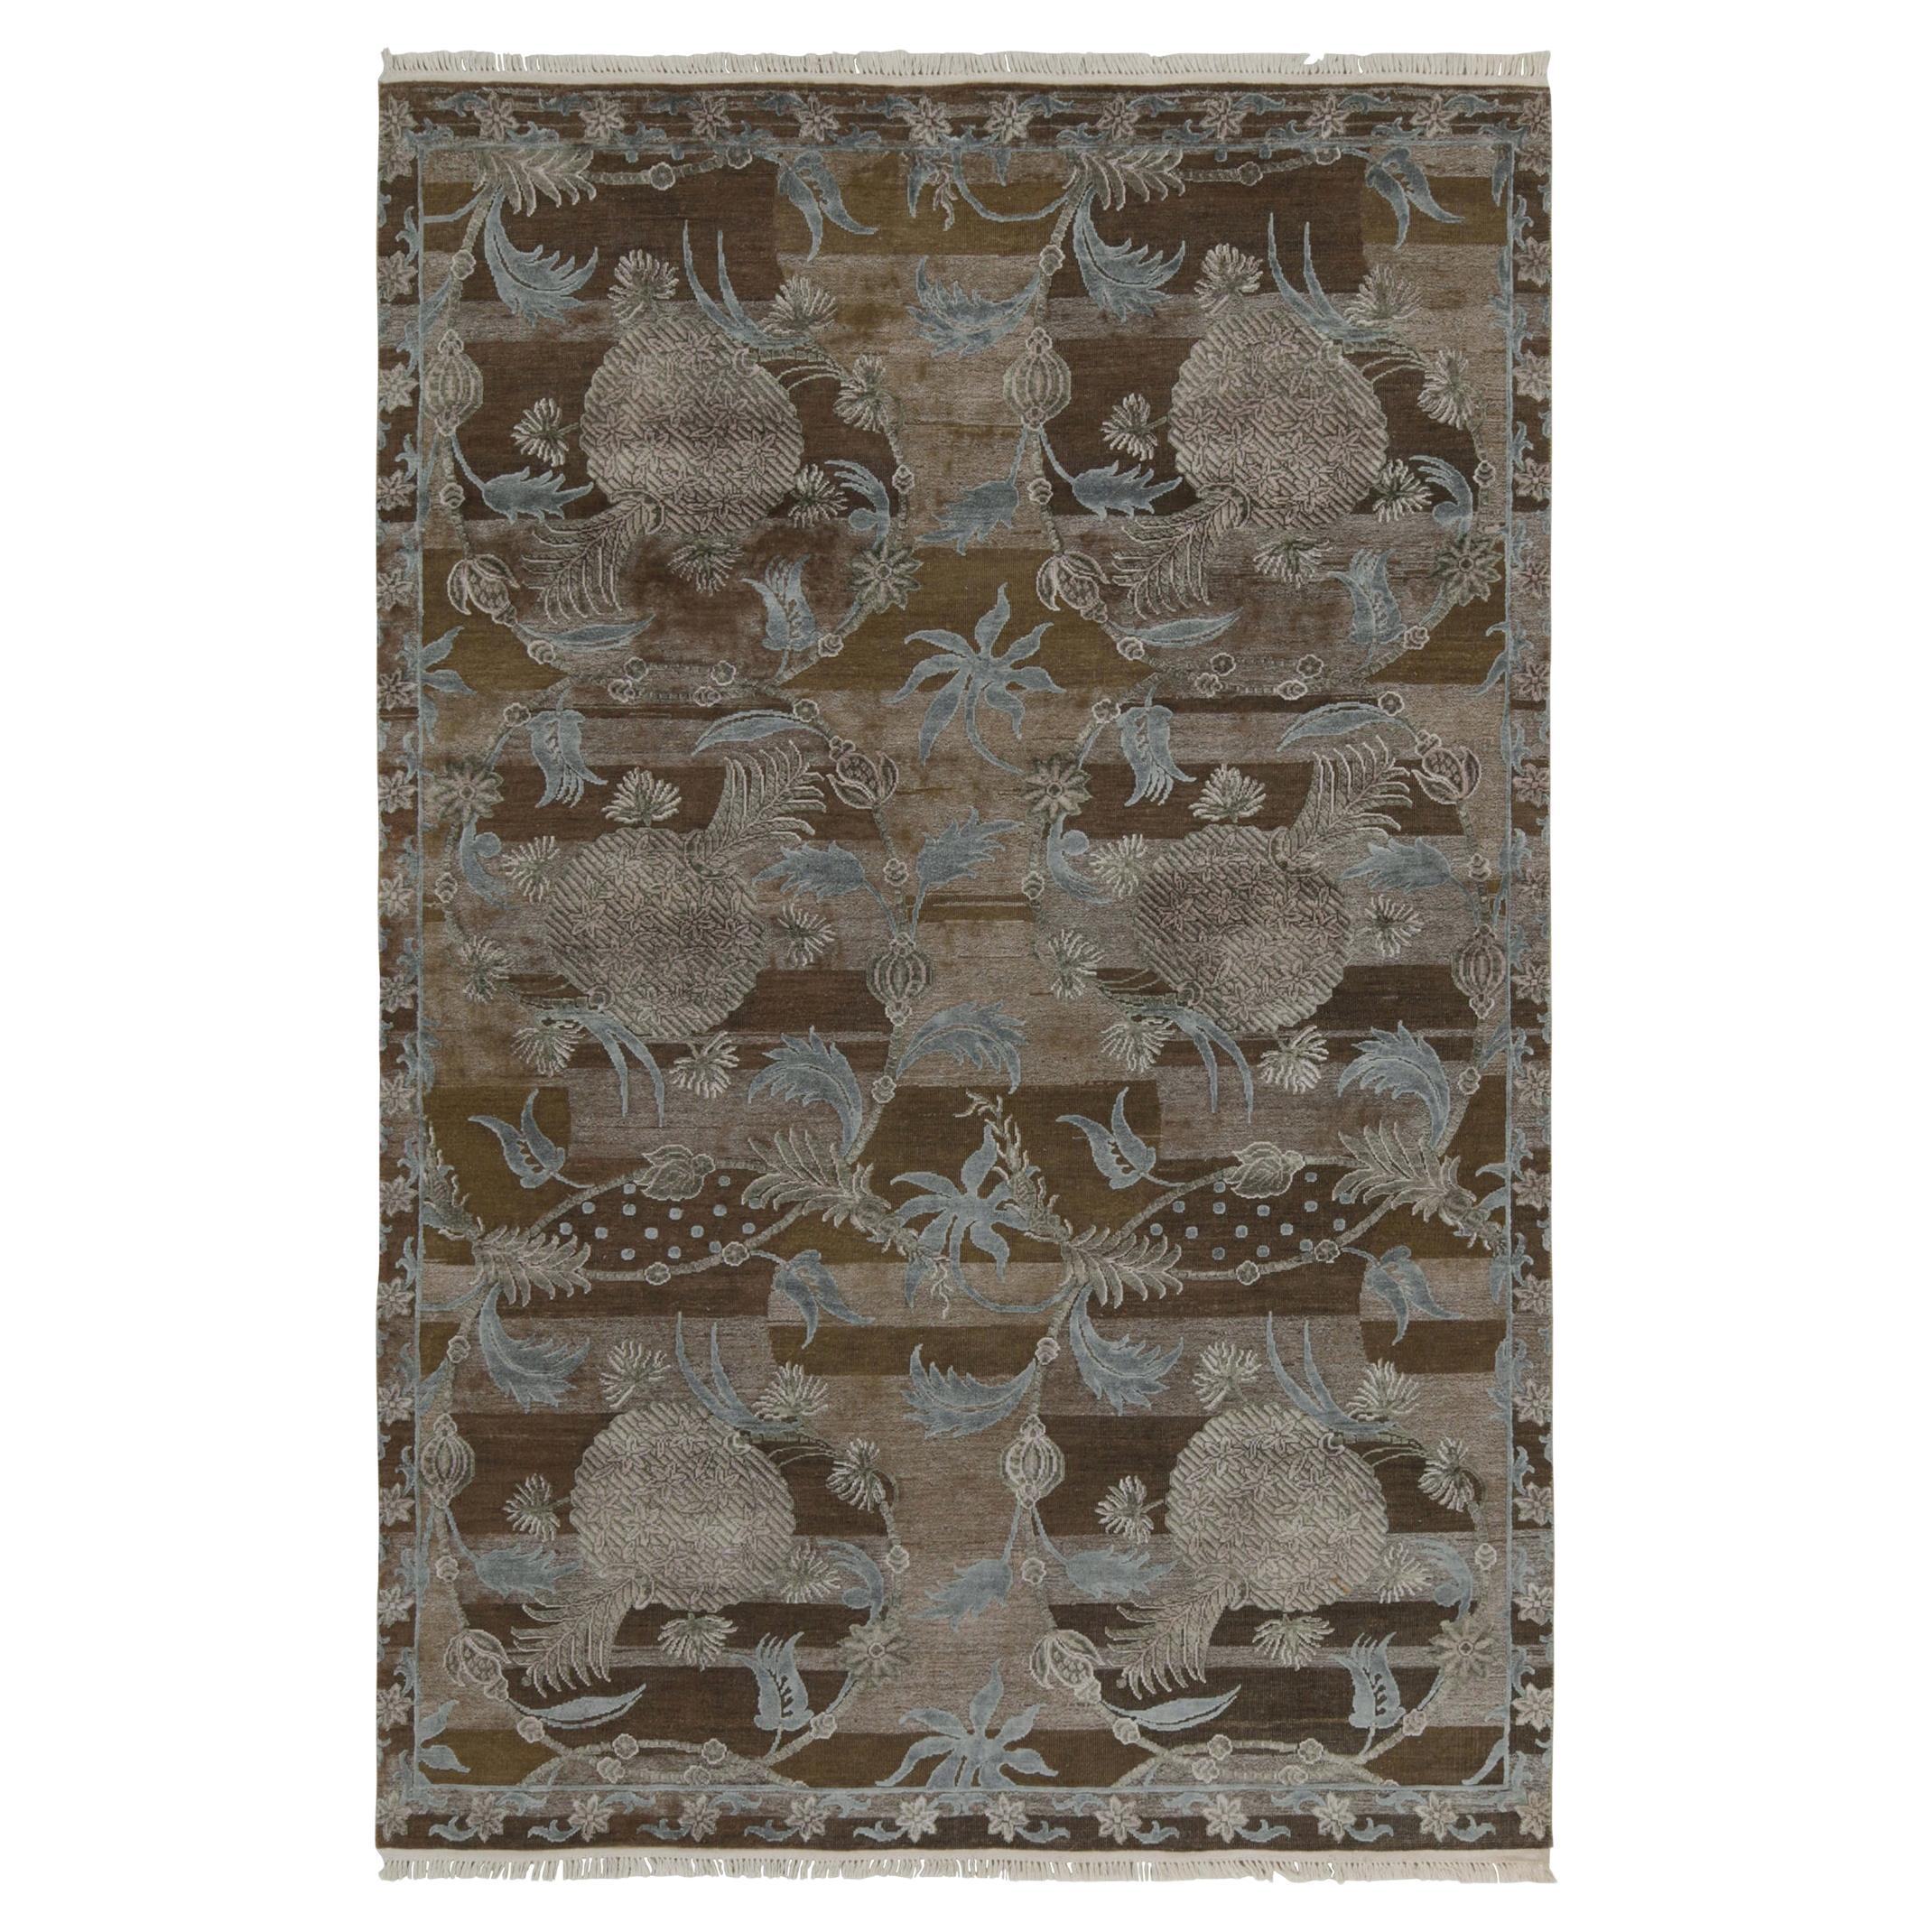 Rug & Kilim's Contemporary Teppich in Brown mit grauen und blauen Blumenmustern